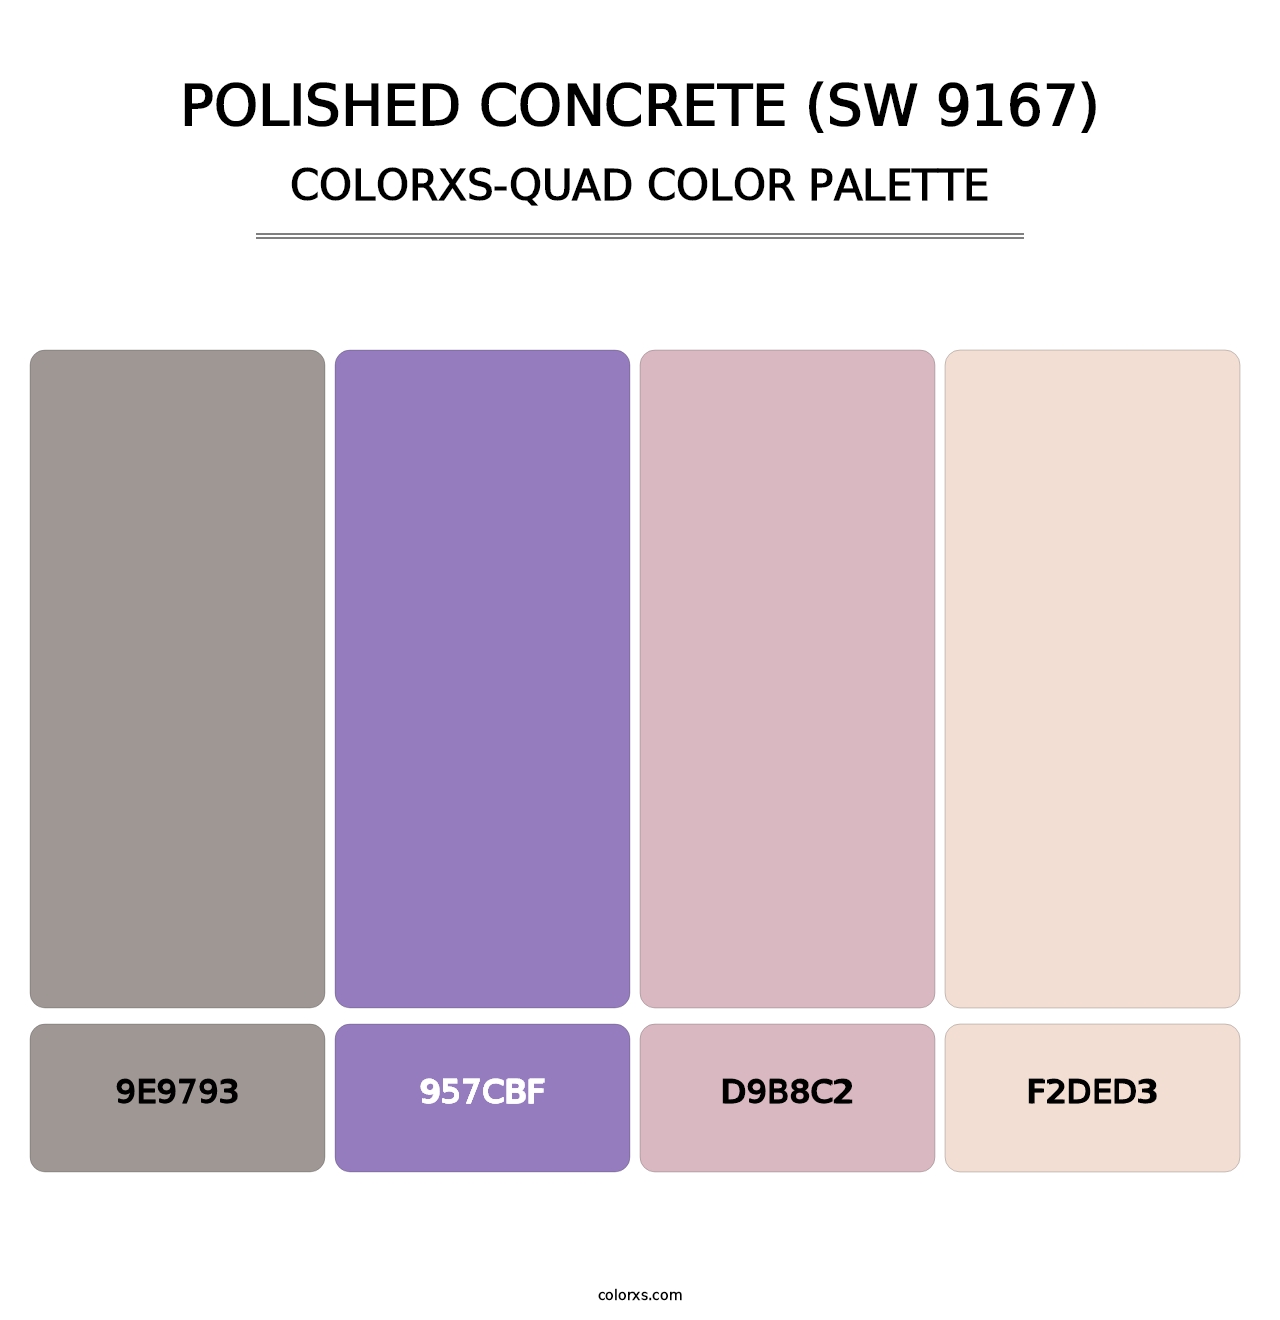 Polished Concrete (SW 9167) - Colorxs Quad Palette